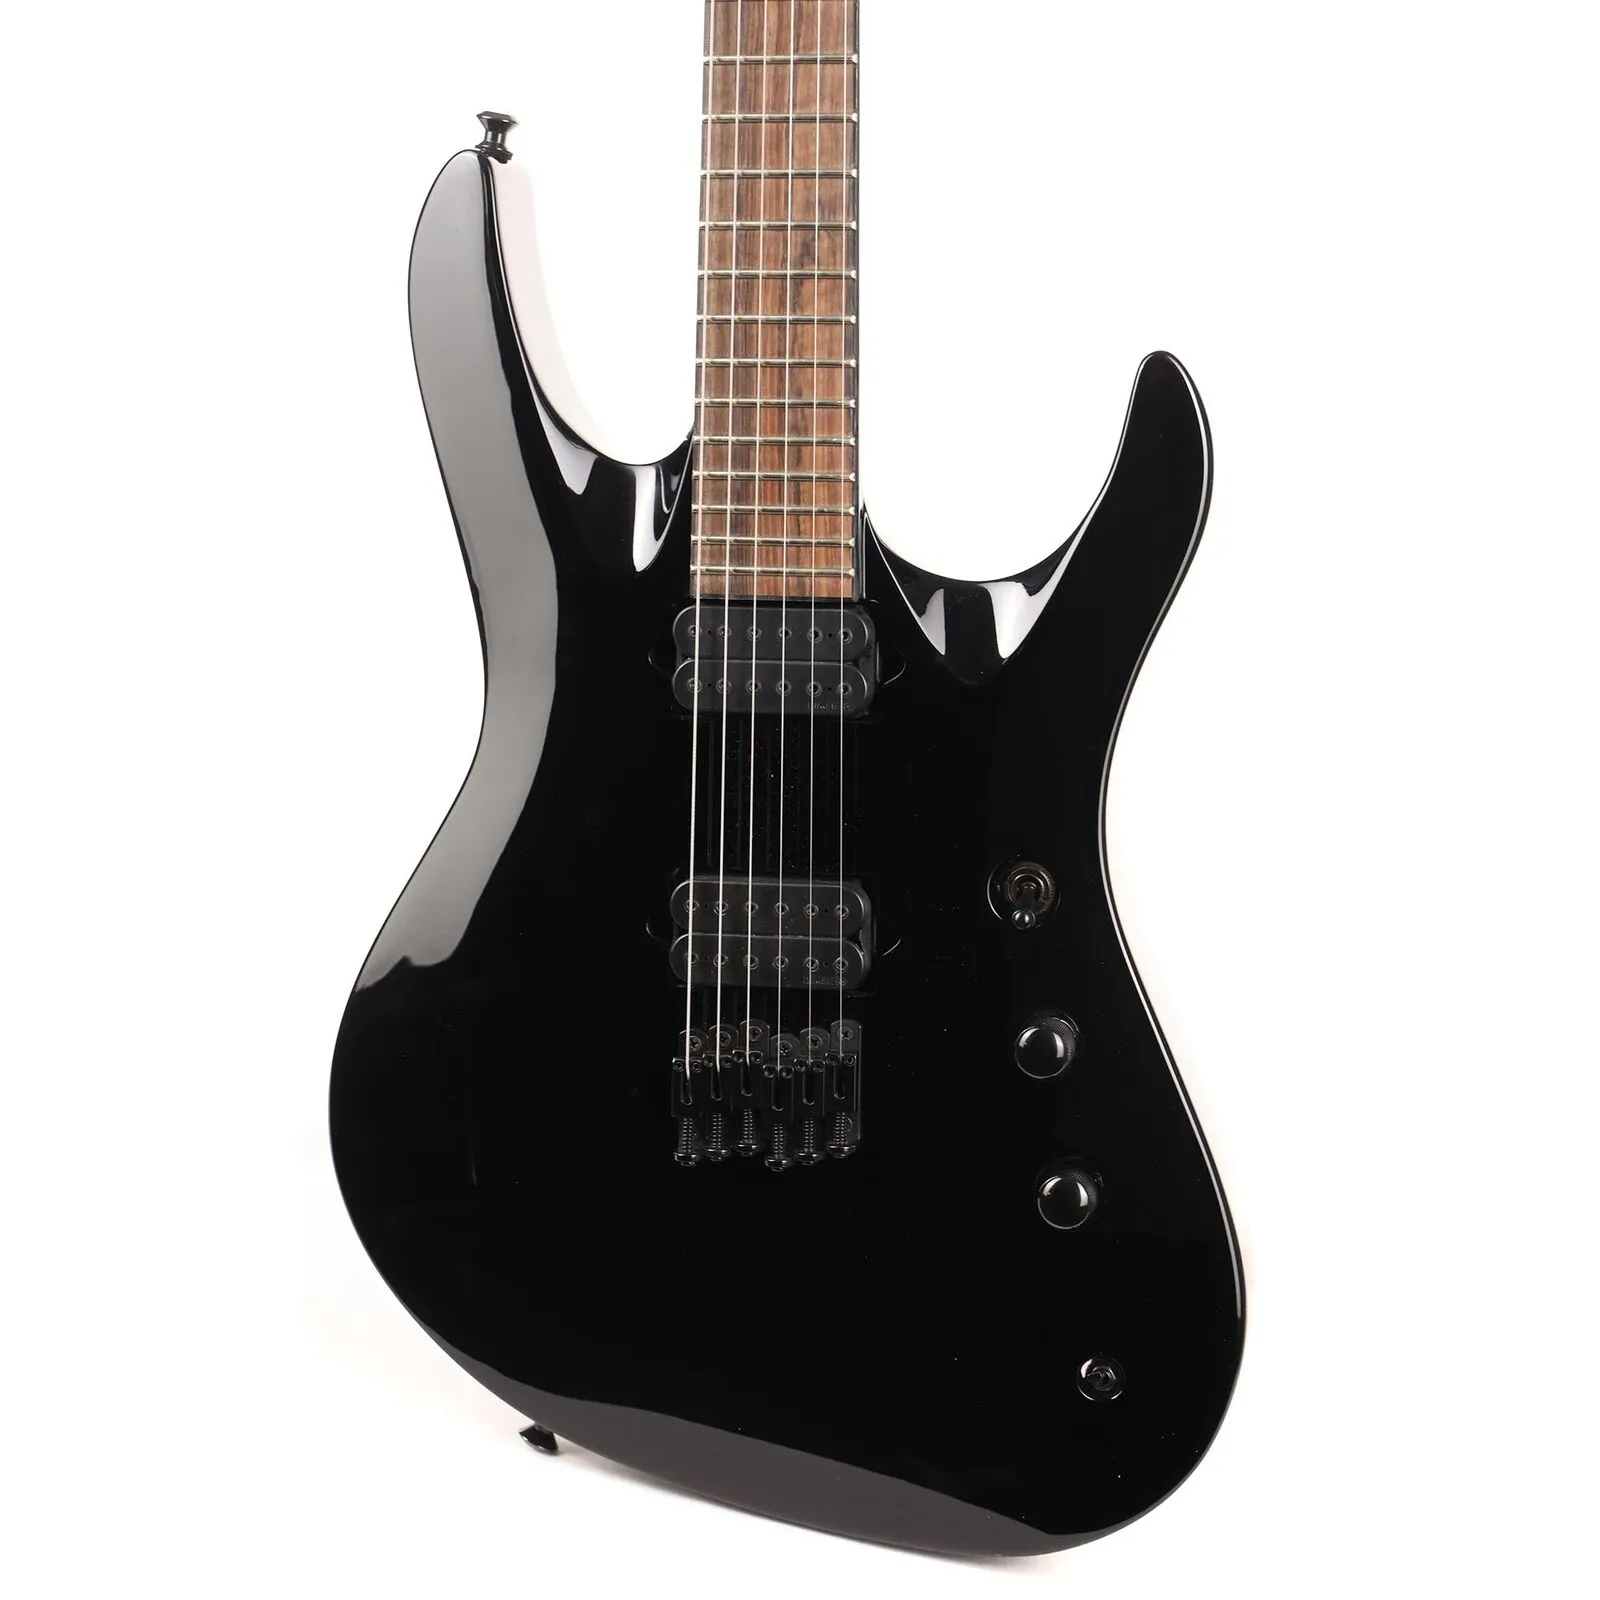 Pro Series Chris Broderick Signature Soloist HT6 Guitare électrique noir brillant comme sur les photos.